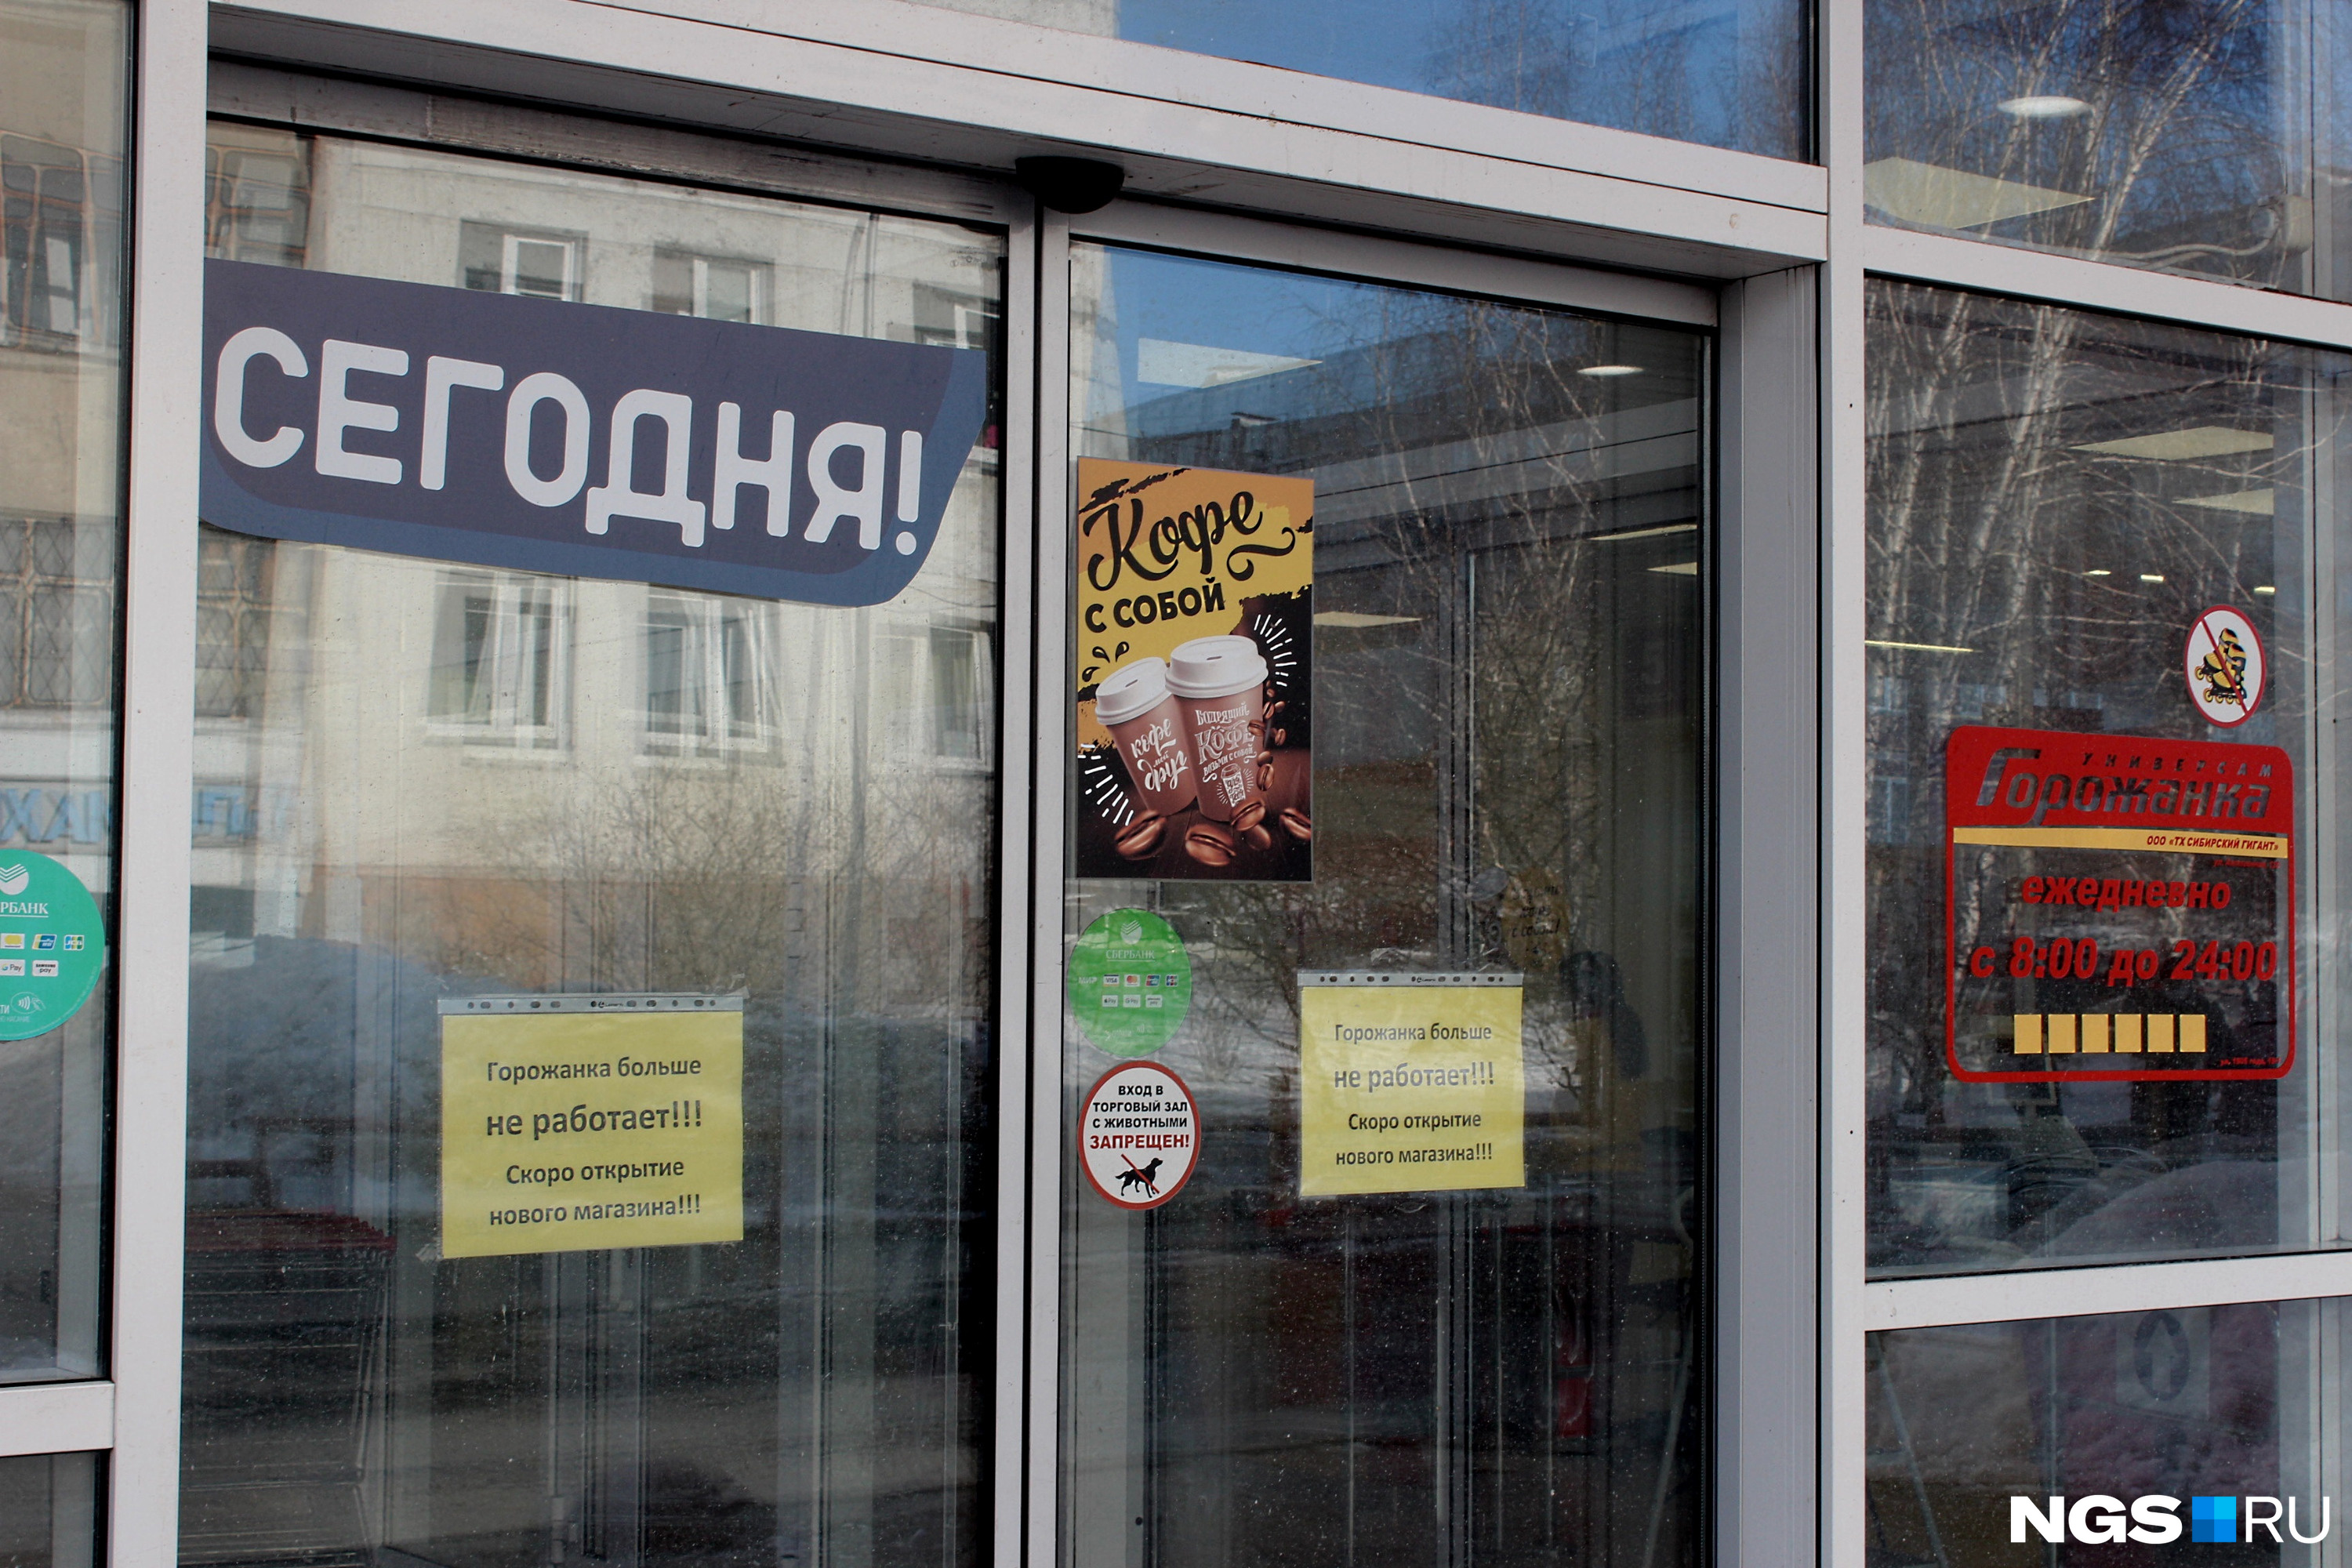 Магазин горожанка в Новосибирске закрывается. Гледиз магазин Лубянка. Почему сегодня закрыты магазины. Какие магазины закрылись в Новосибирске.